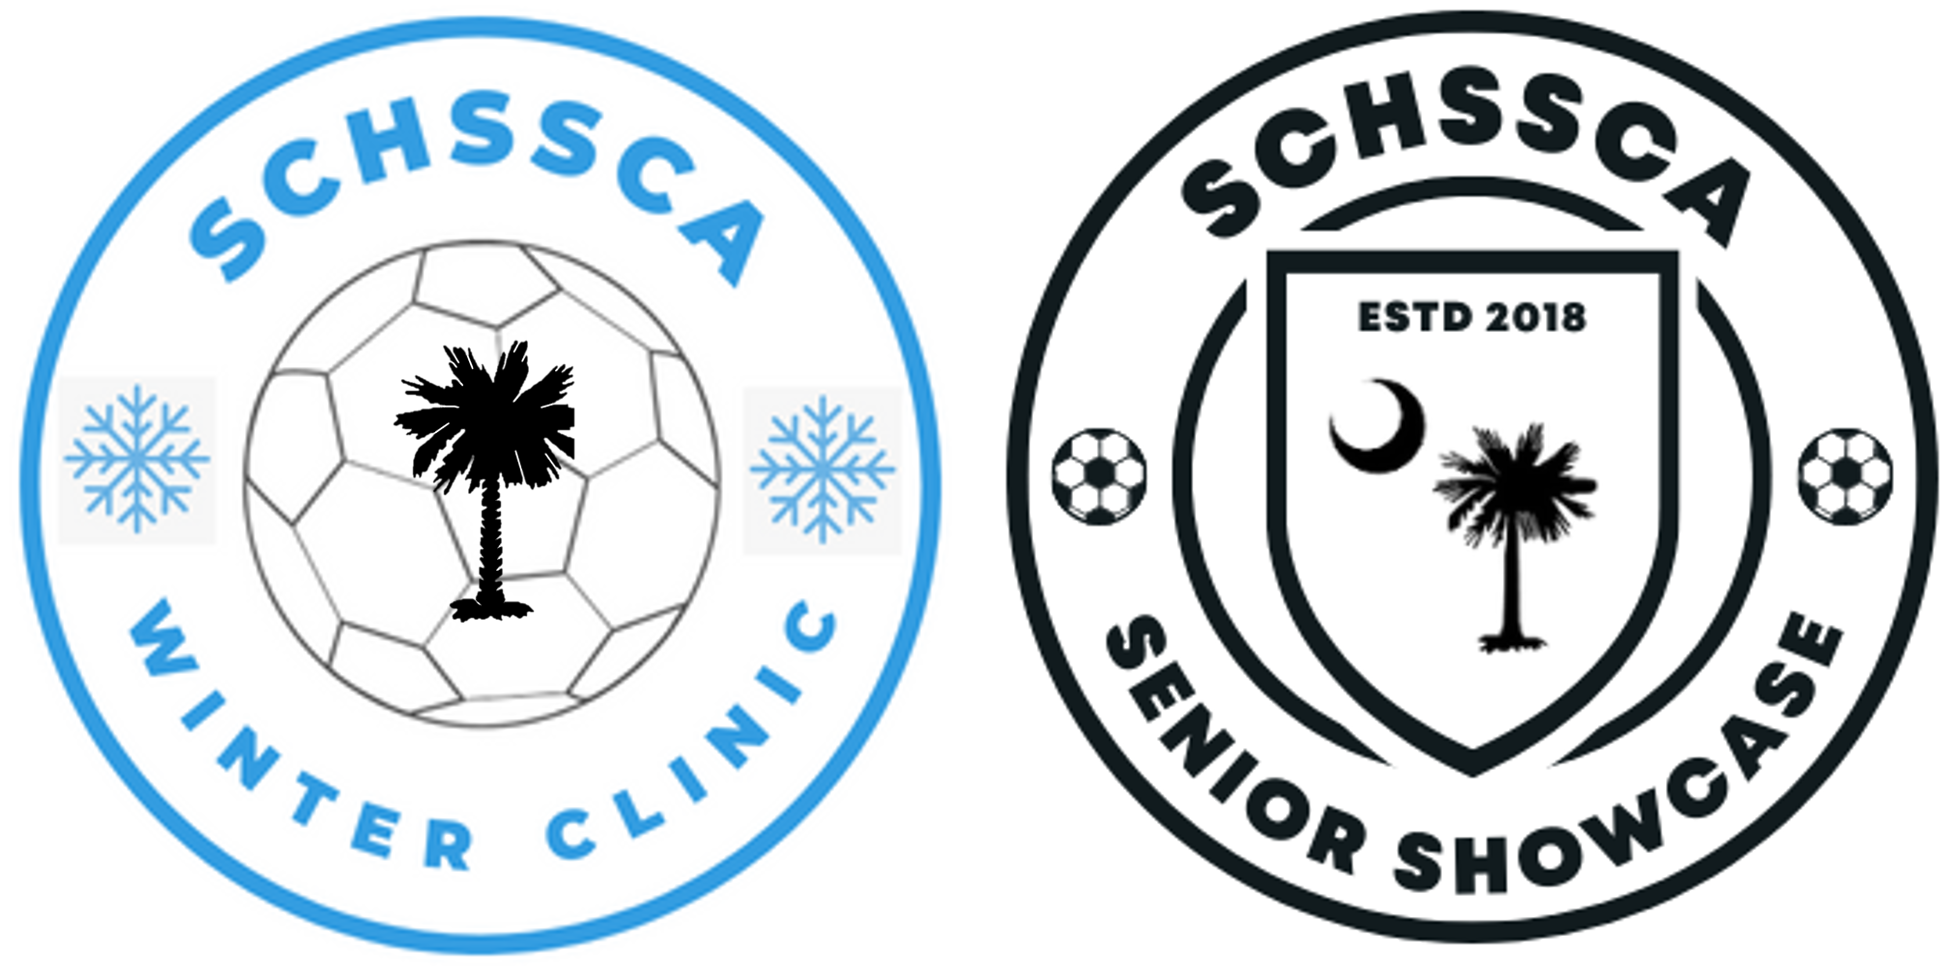 SCHSSCA Winter Clinic & Senior Showcase